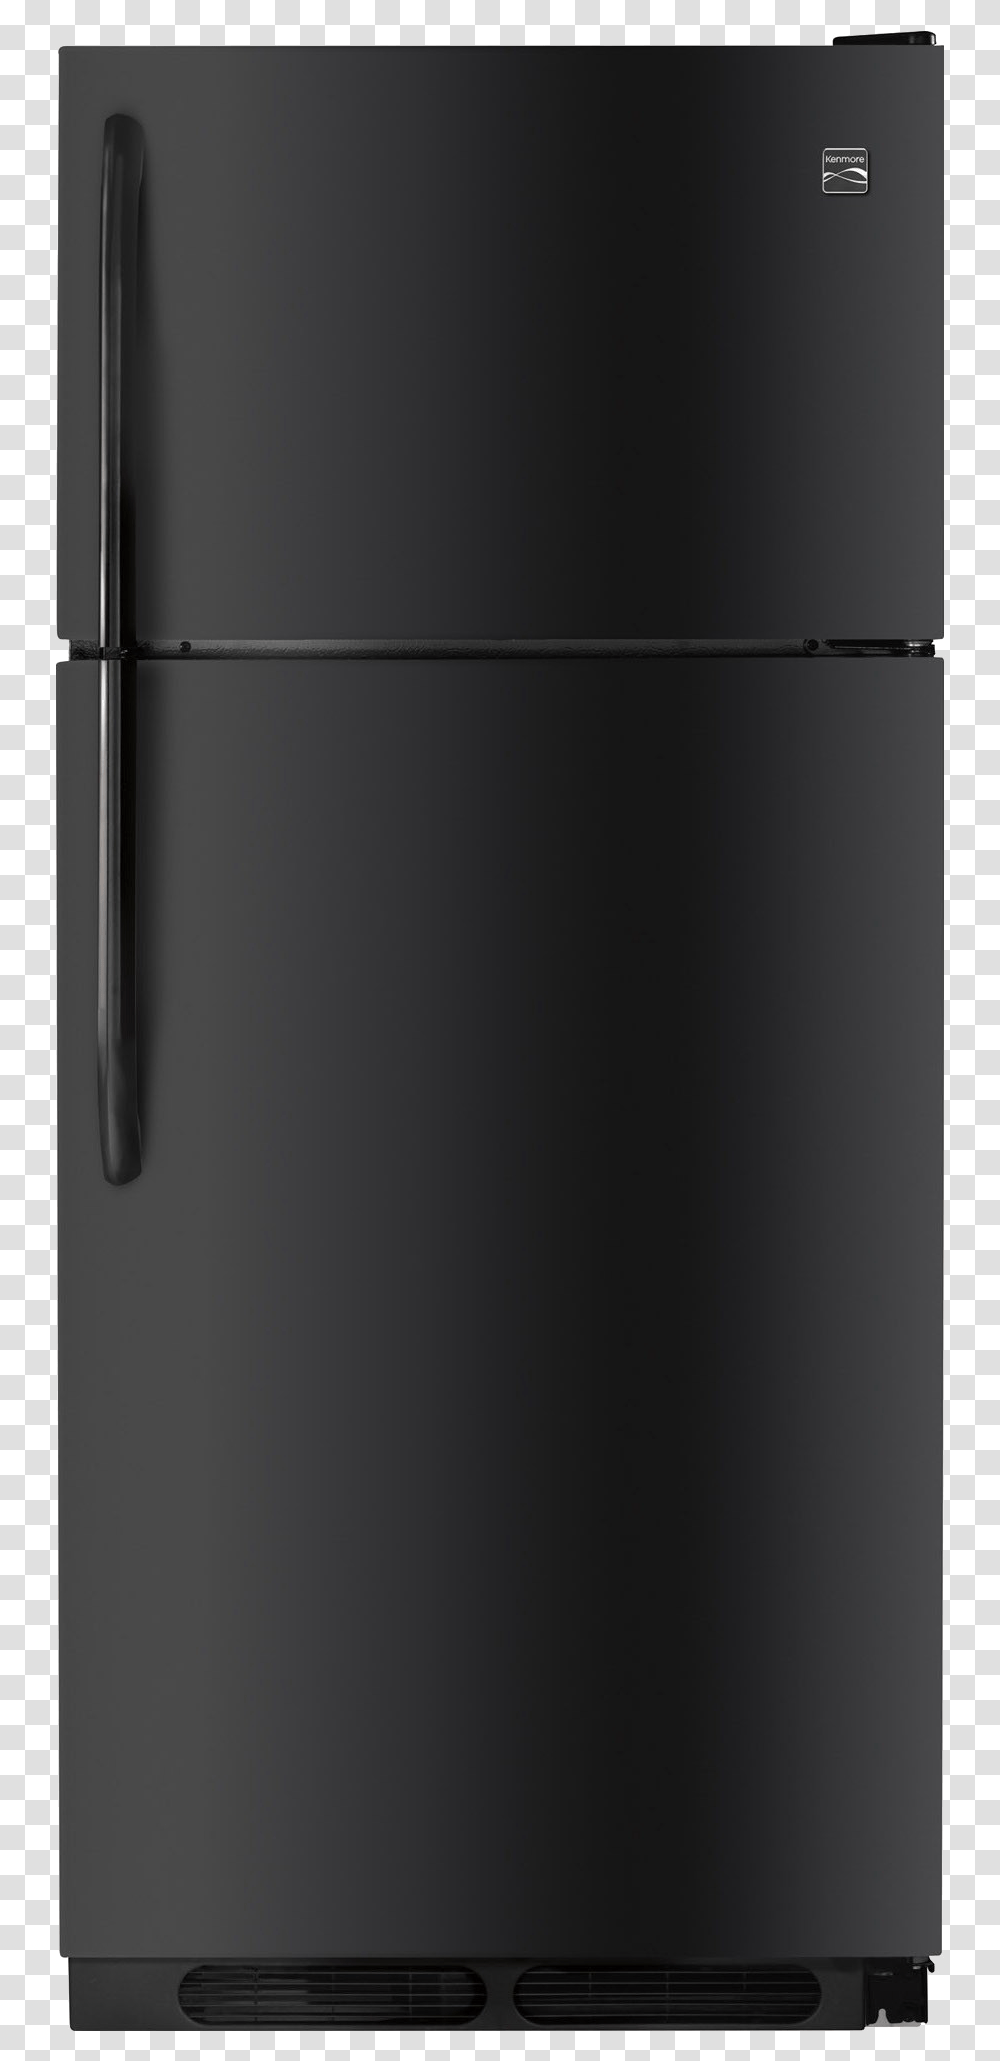 Refrigerator Download Image Kenmore Refrigerator Black, Appliance Transparent Png